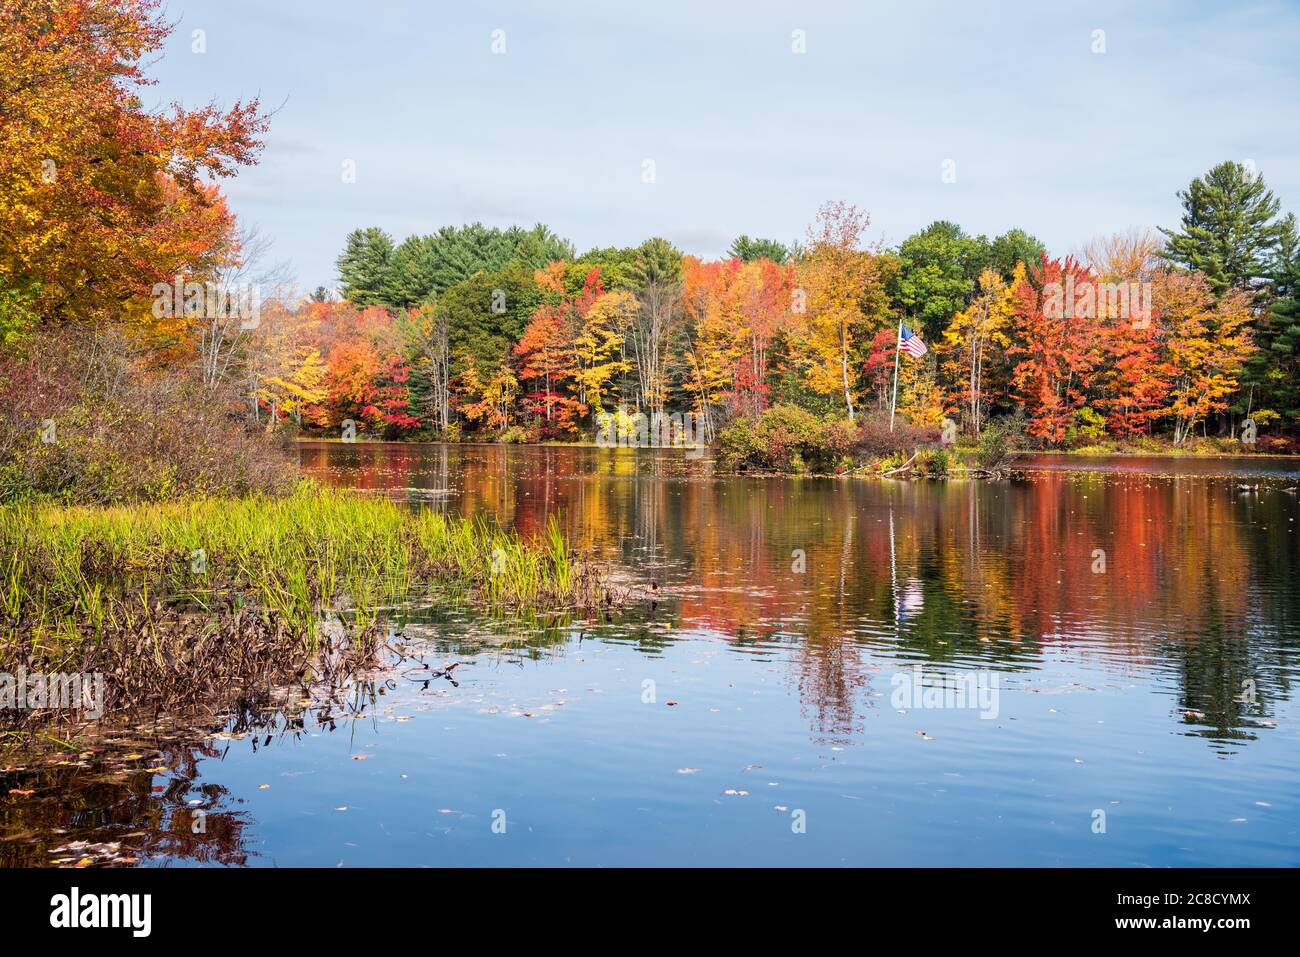 Fluss mit Banken in dichten Laubwald bedeckt. Atemberaubende Herbstfärbung. Eine kleine Insel mit US-Flagge ist in der Mitte des Flusses zu sehen. Stockfoto